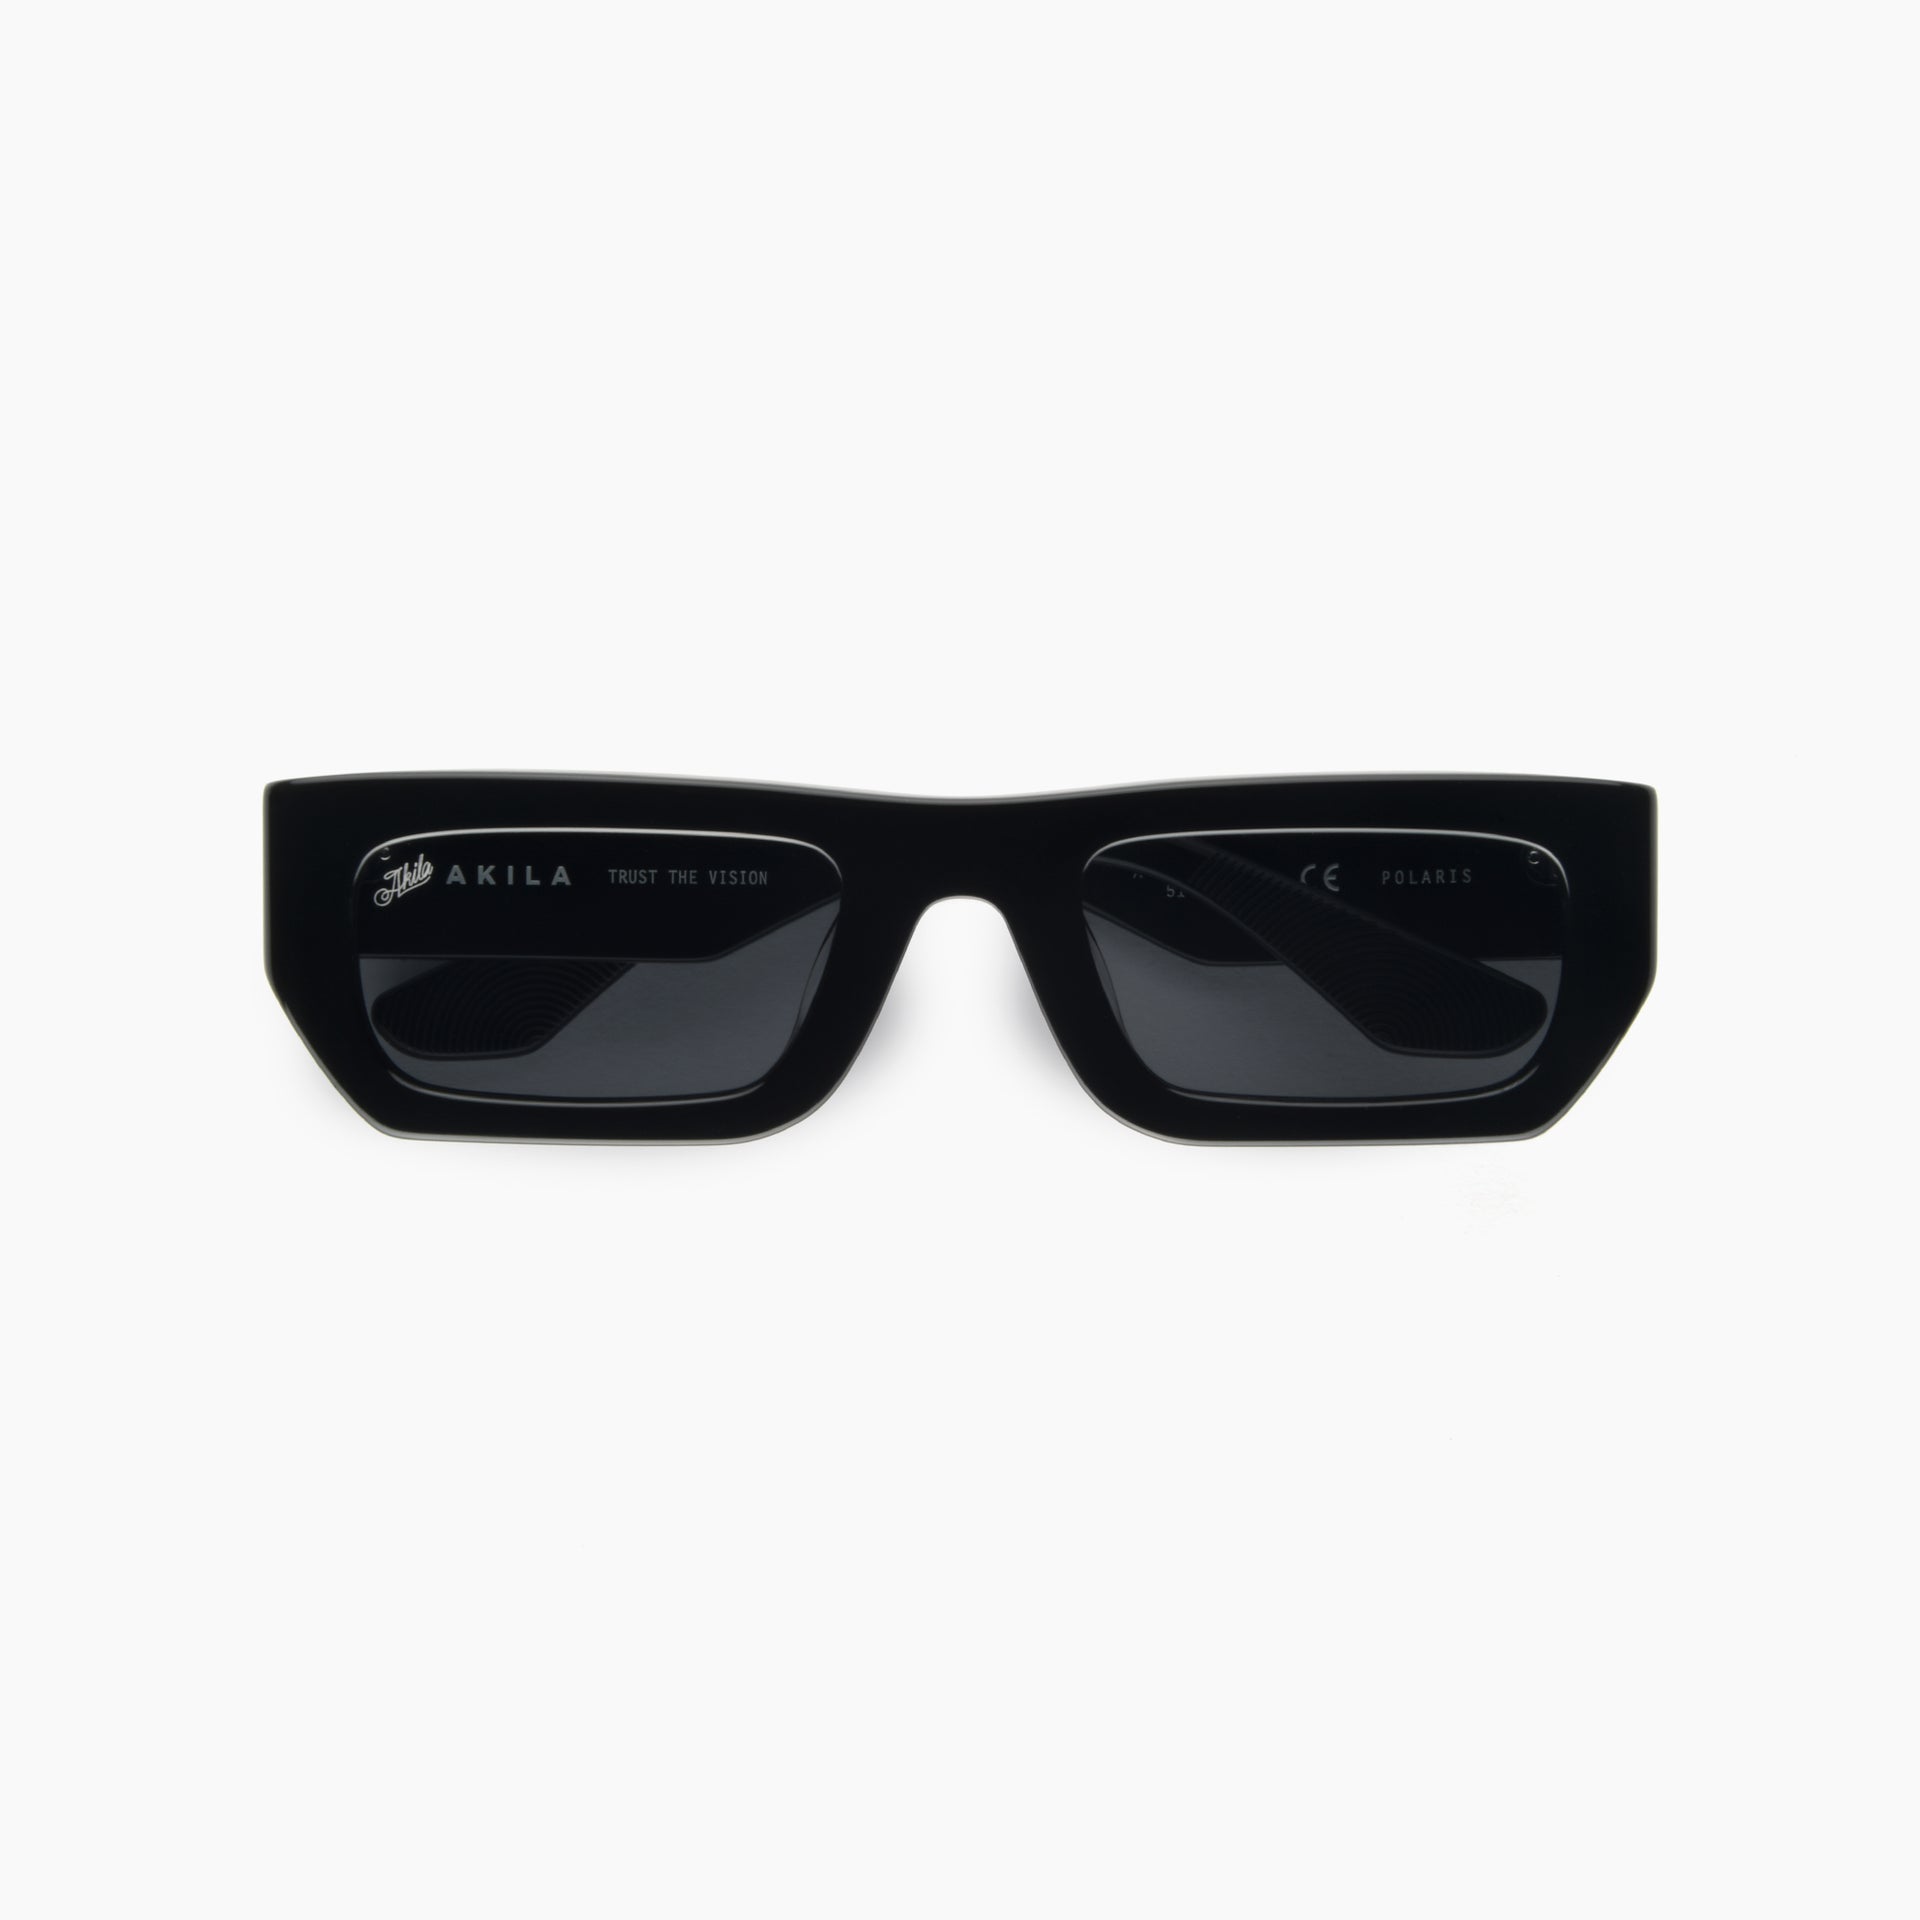 Polaris Sunglasses - Black/Black